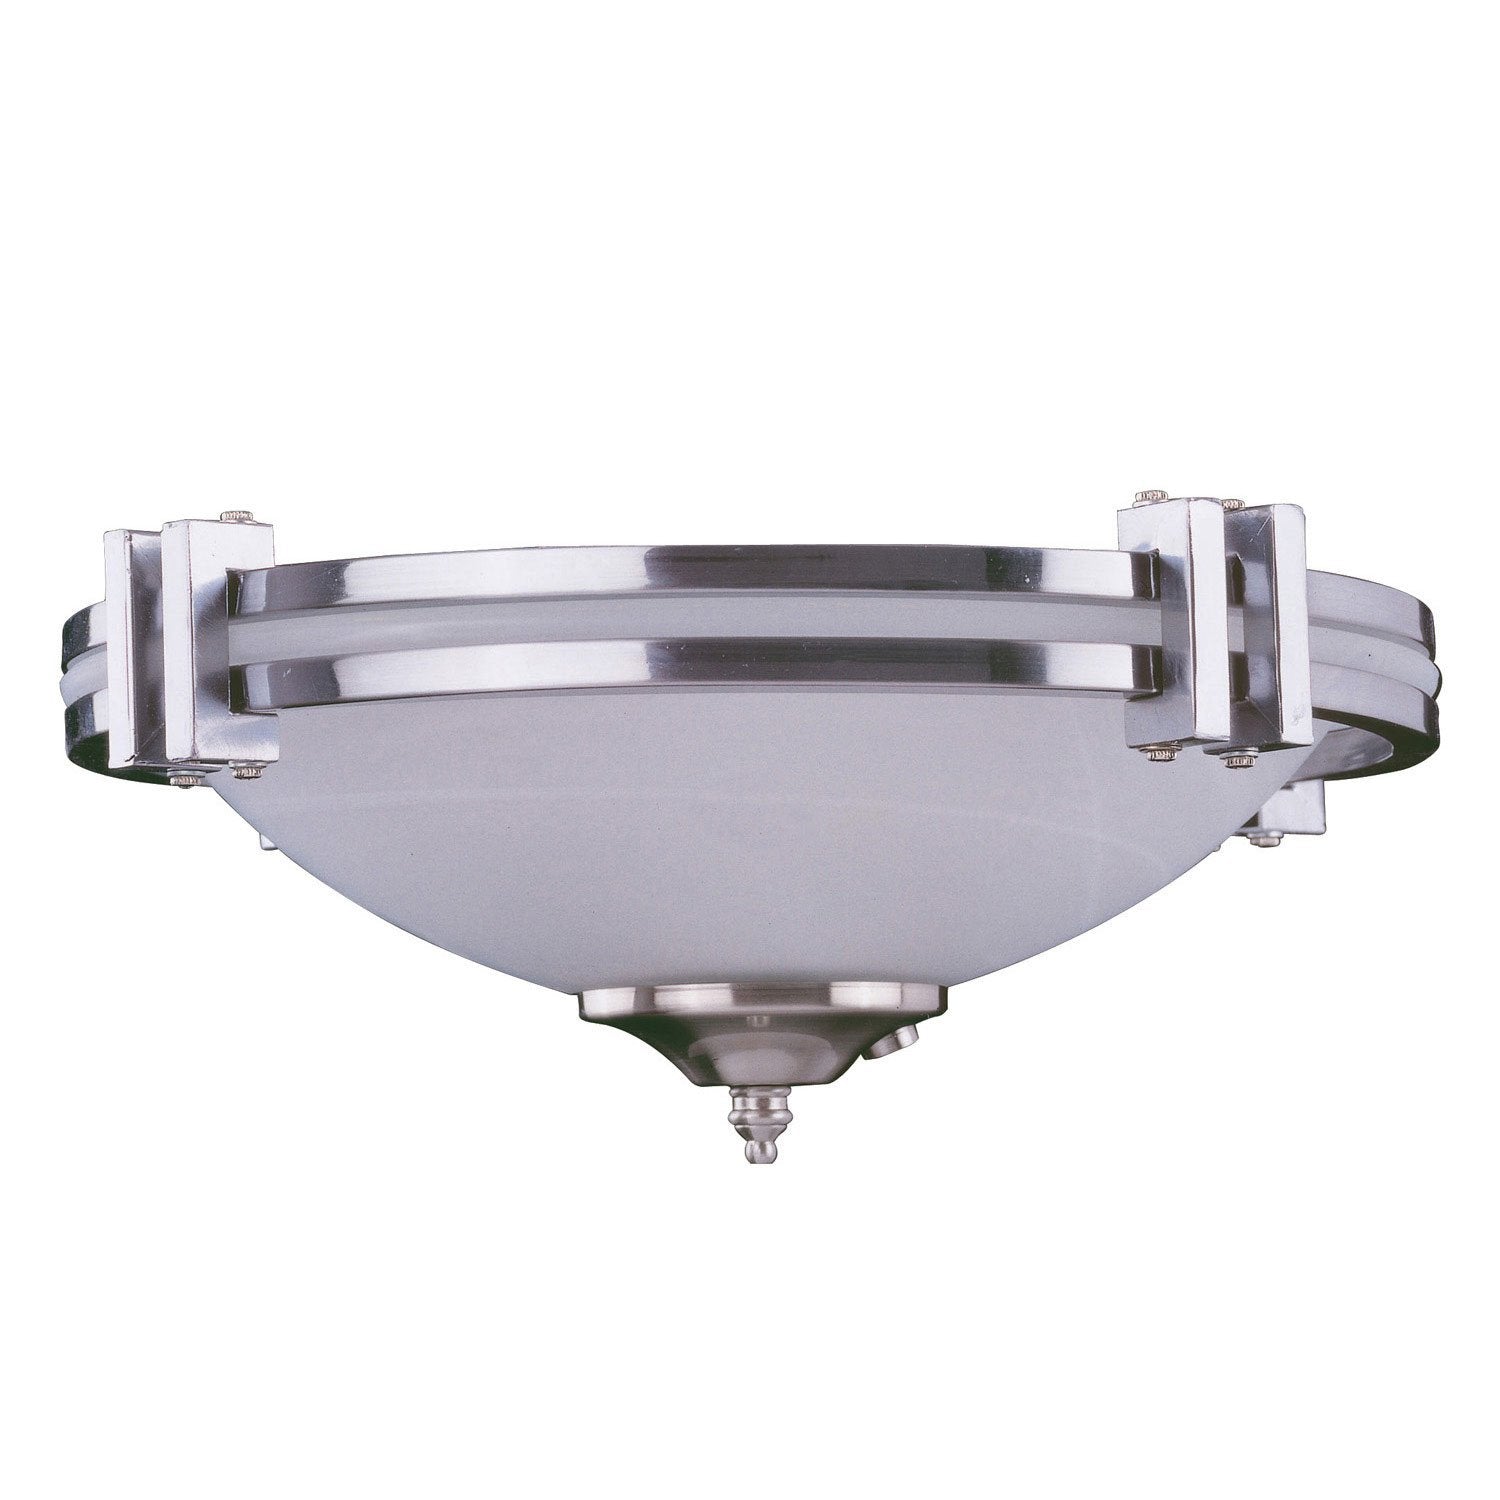 Concord Fans 3 Light Fan Modern Stainless Steel Finish Ceiling Fan Light Kit